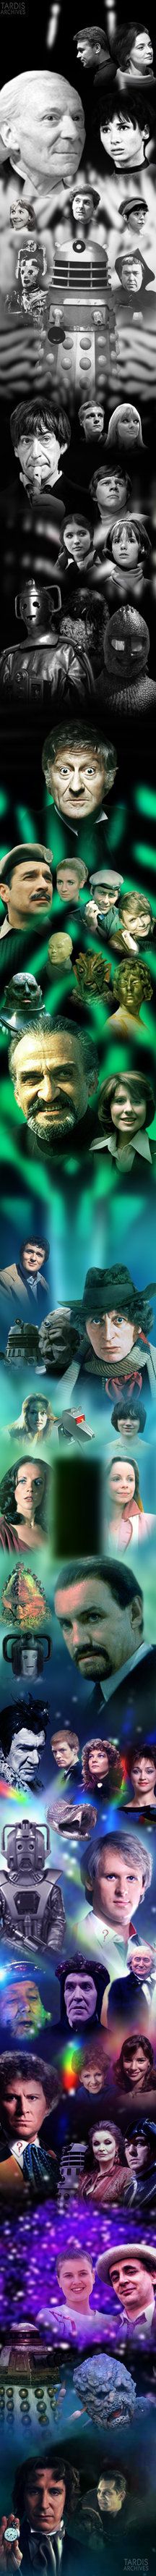 Doctor Who Season 1-26 (+ TV Movie) by HeresJoeking